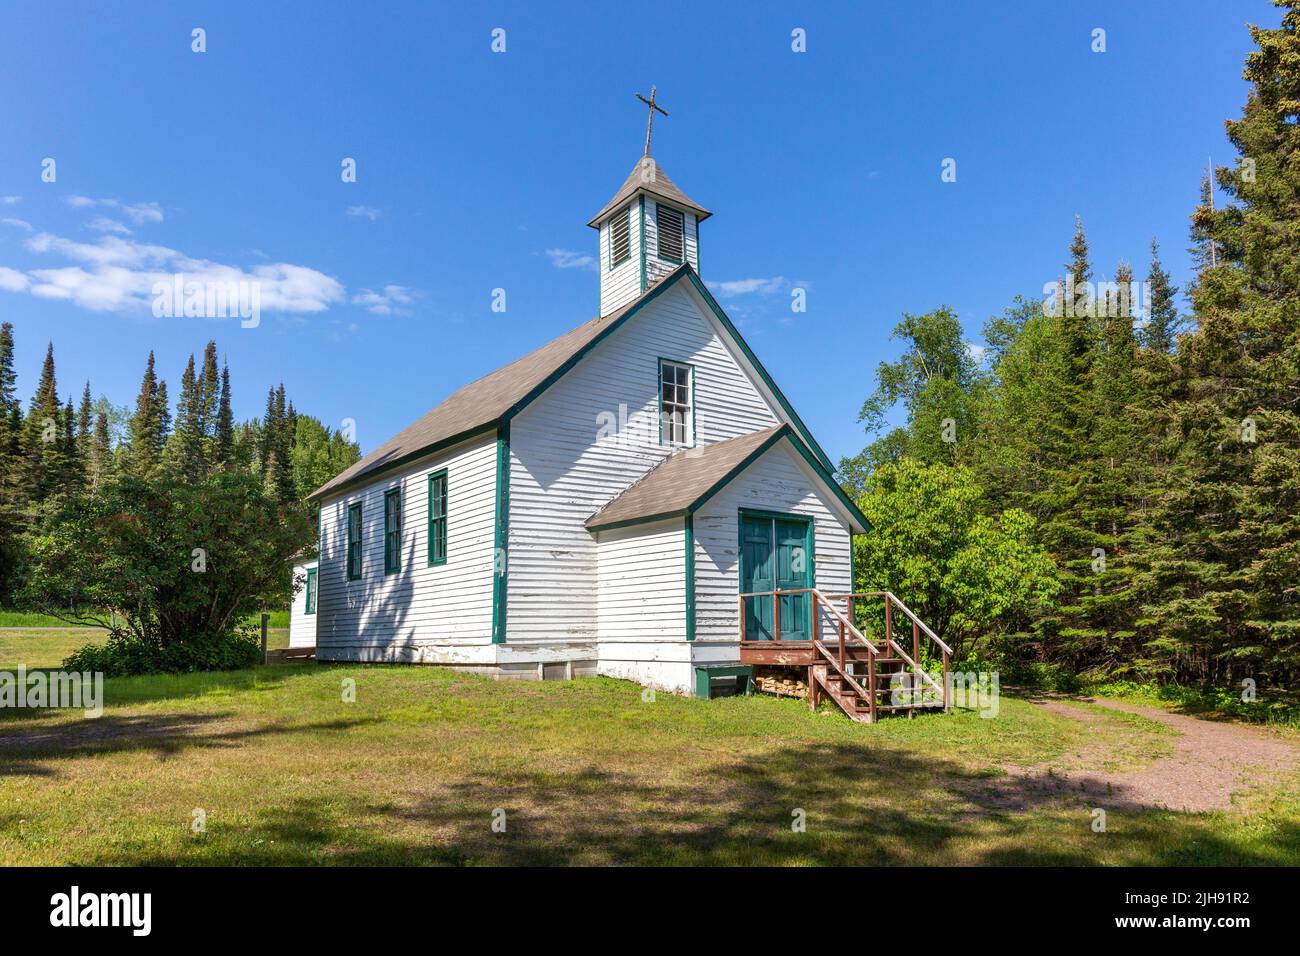 Die 1895 St. Francis Xavier Church oder Chippewa City Church in der Nähe von Grand Marais, Minnesota. Das Gebäude wurde im französischen Stil von Ojibwe Carpent erbaut Stockfoto